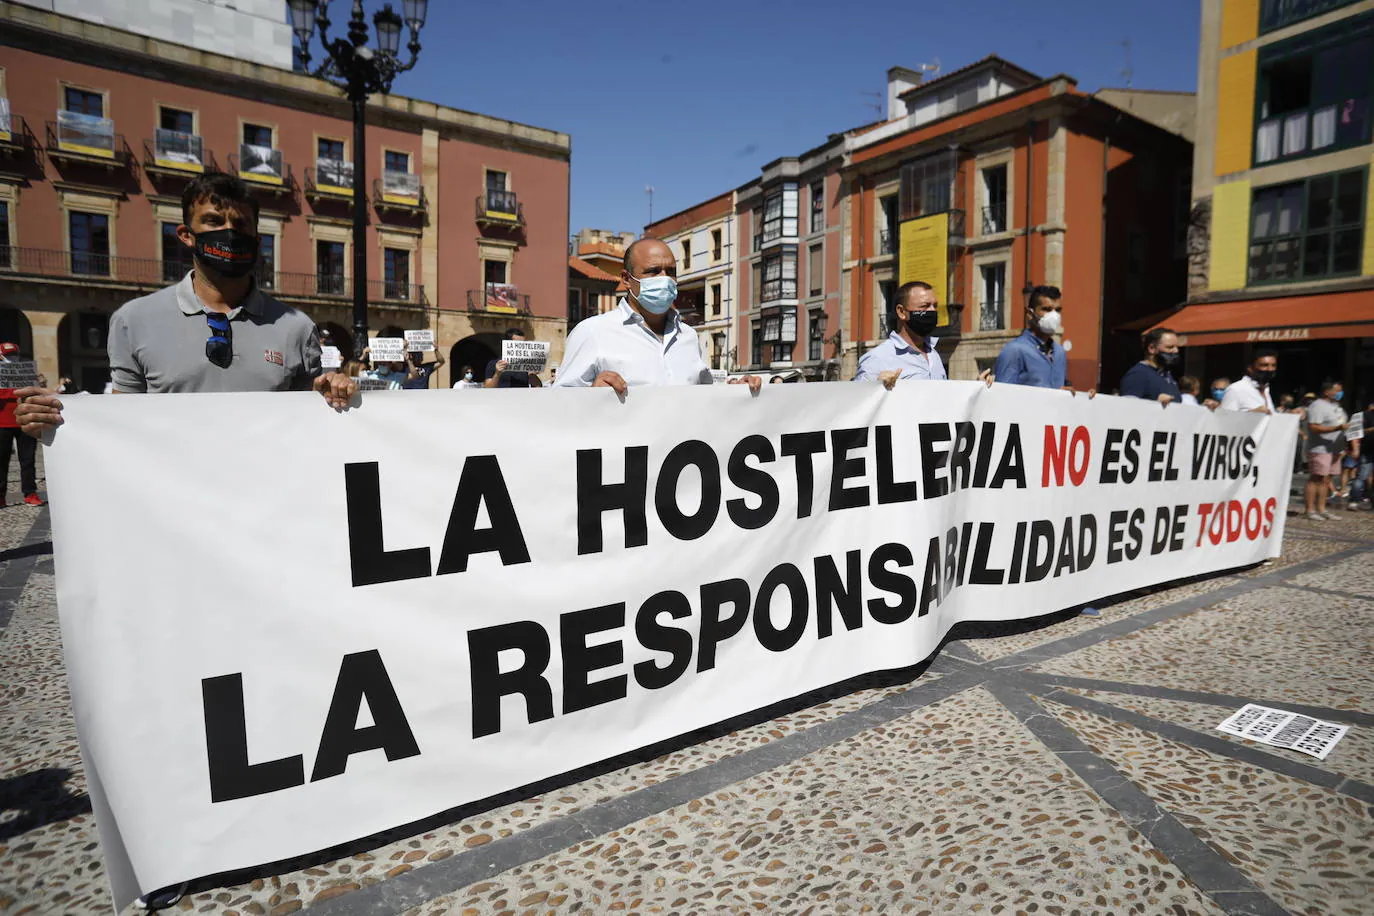 Los empresarios hosteleros se concentraron en la Plaza Mayor gijonesa como medida de protesta por las medidas impuestas por el Principado a sus establecimientos por la pandemia